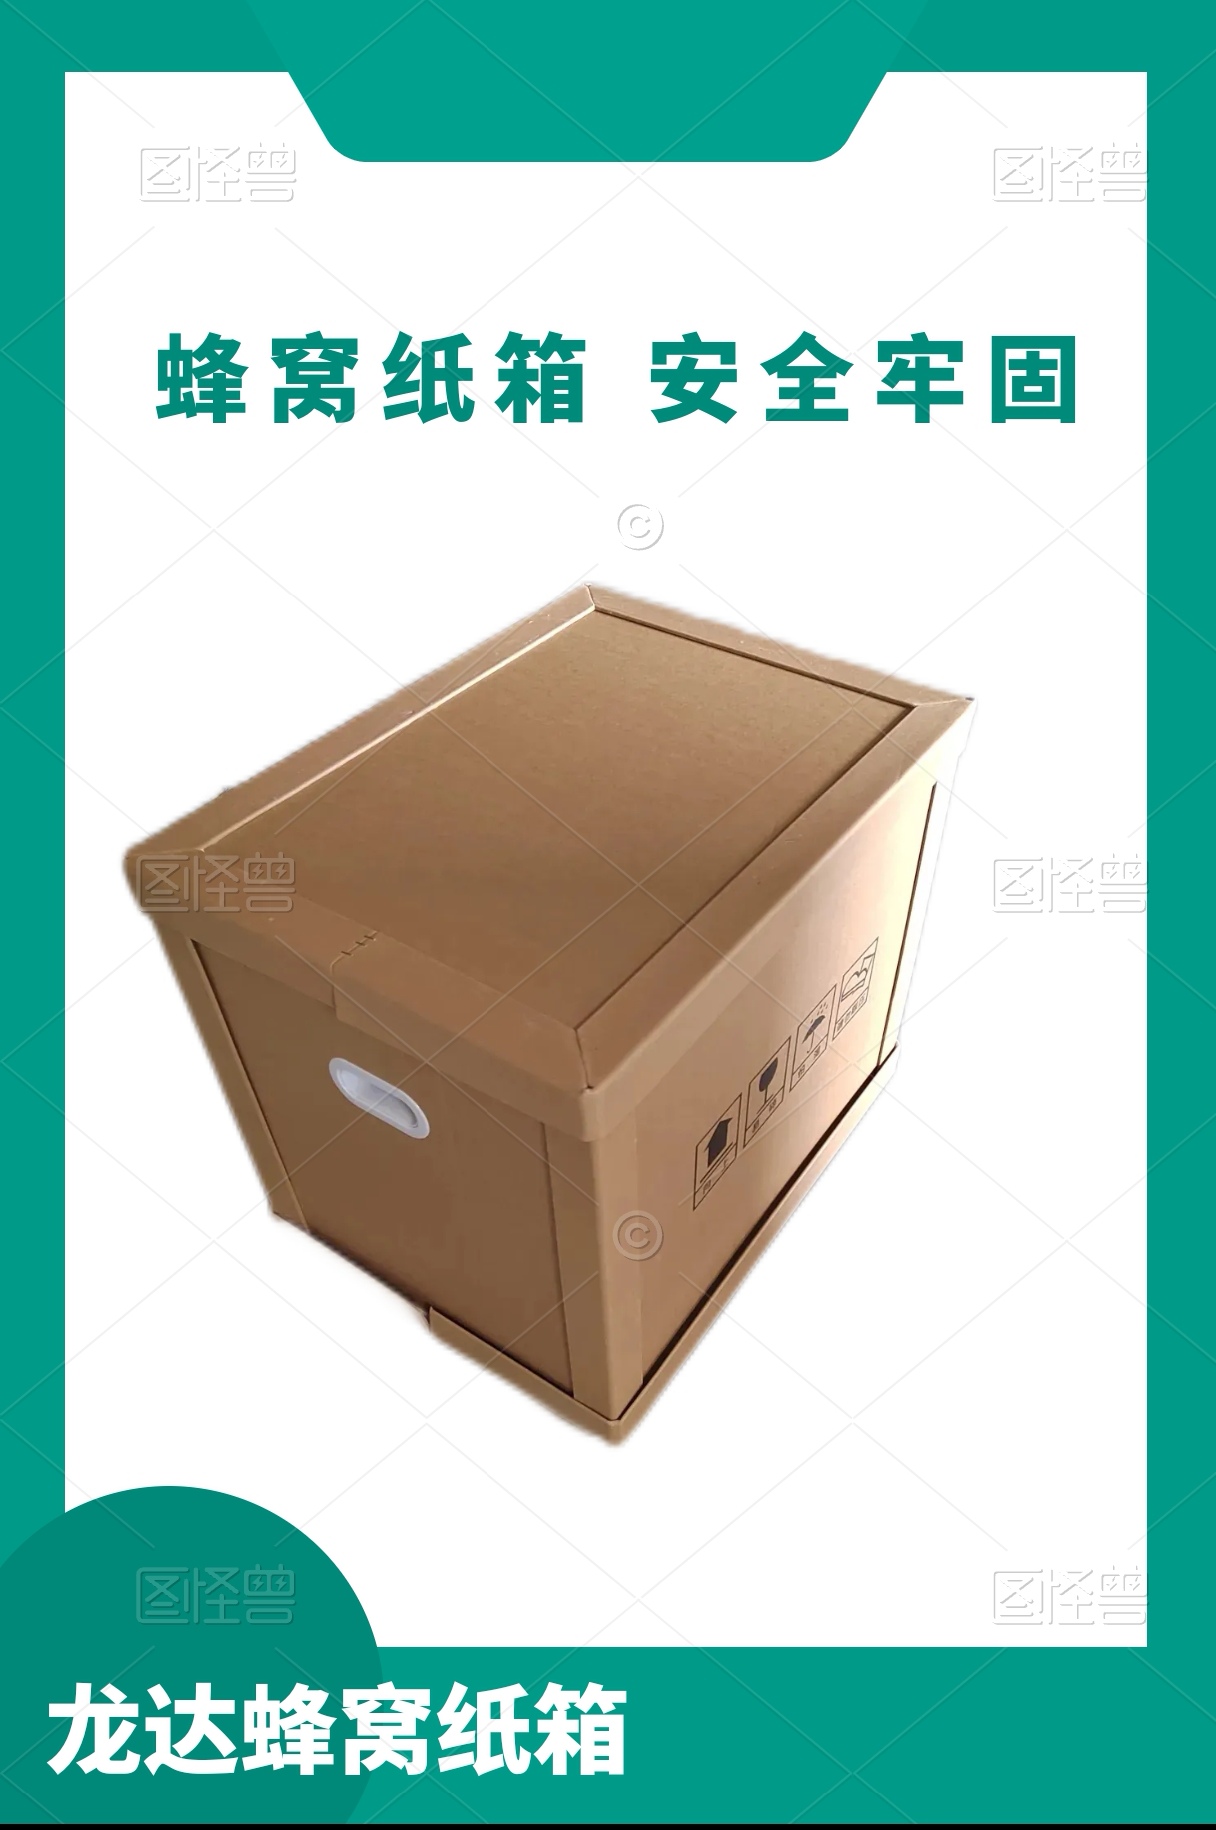 龙达出口纸箱 充电桩包装箱 展示用品纸箱 定制各种规格